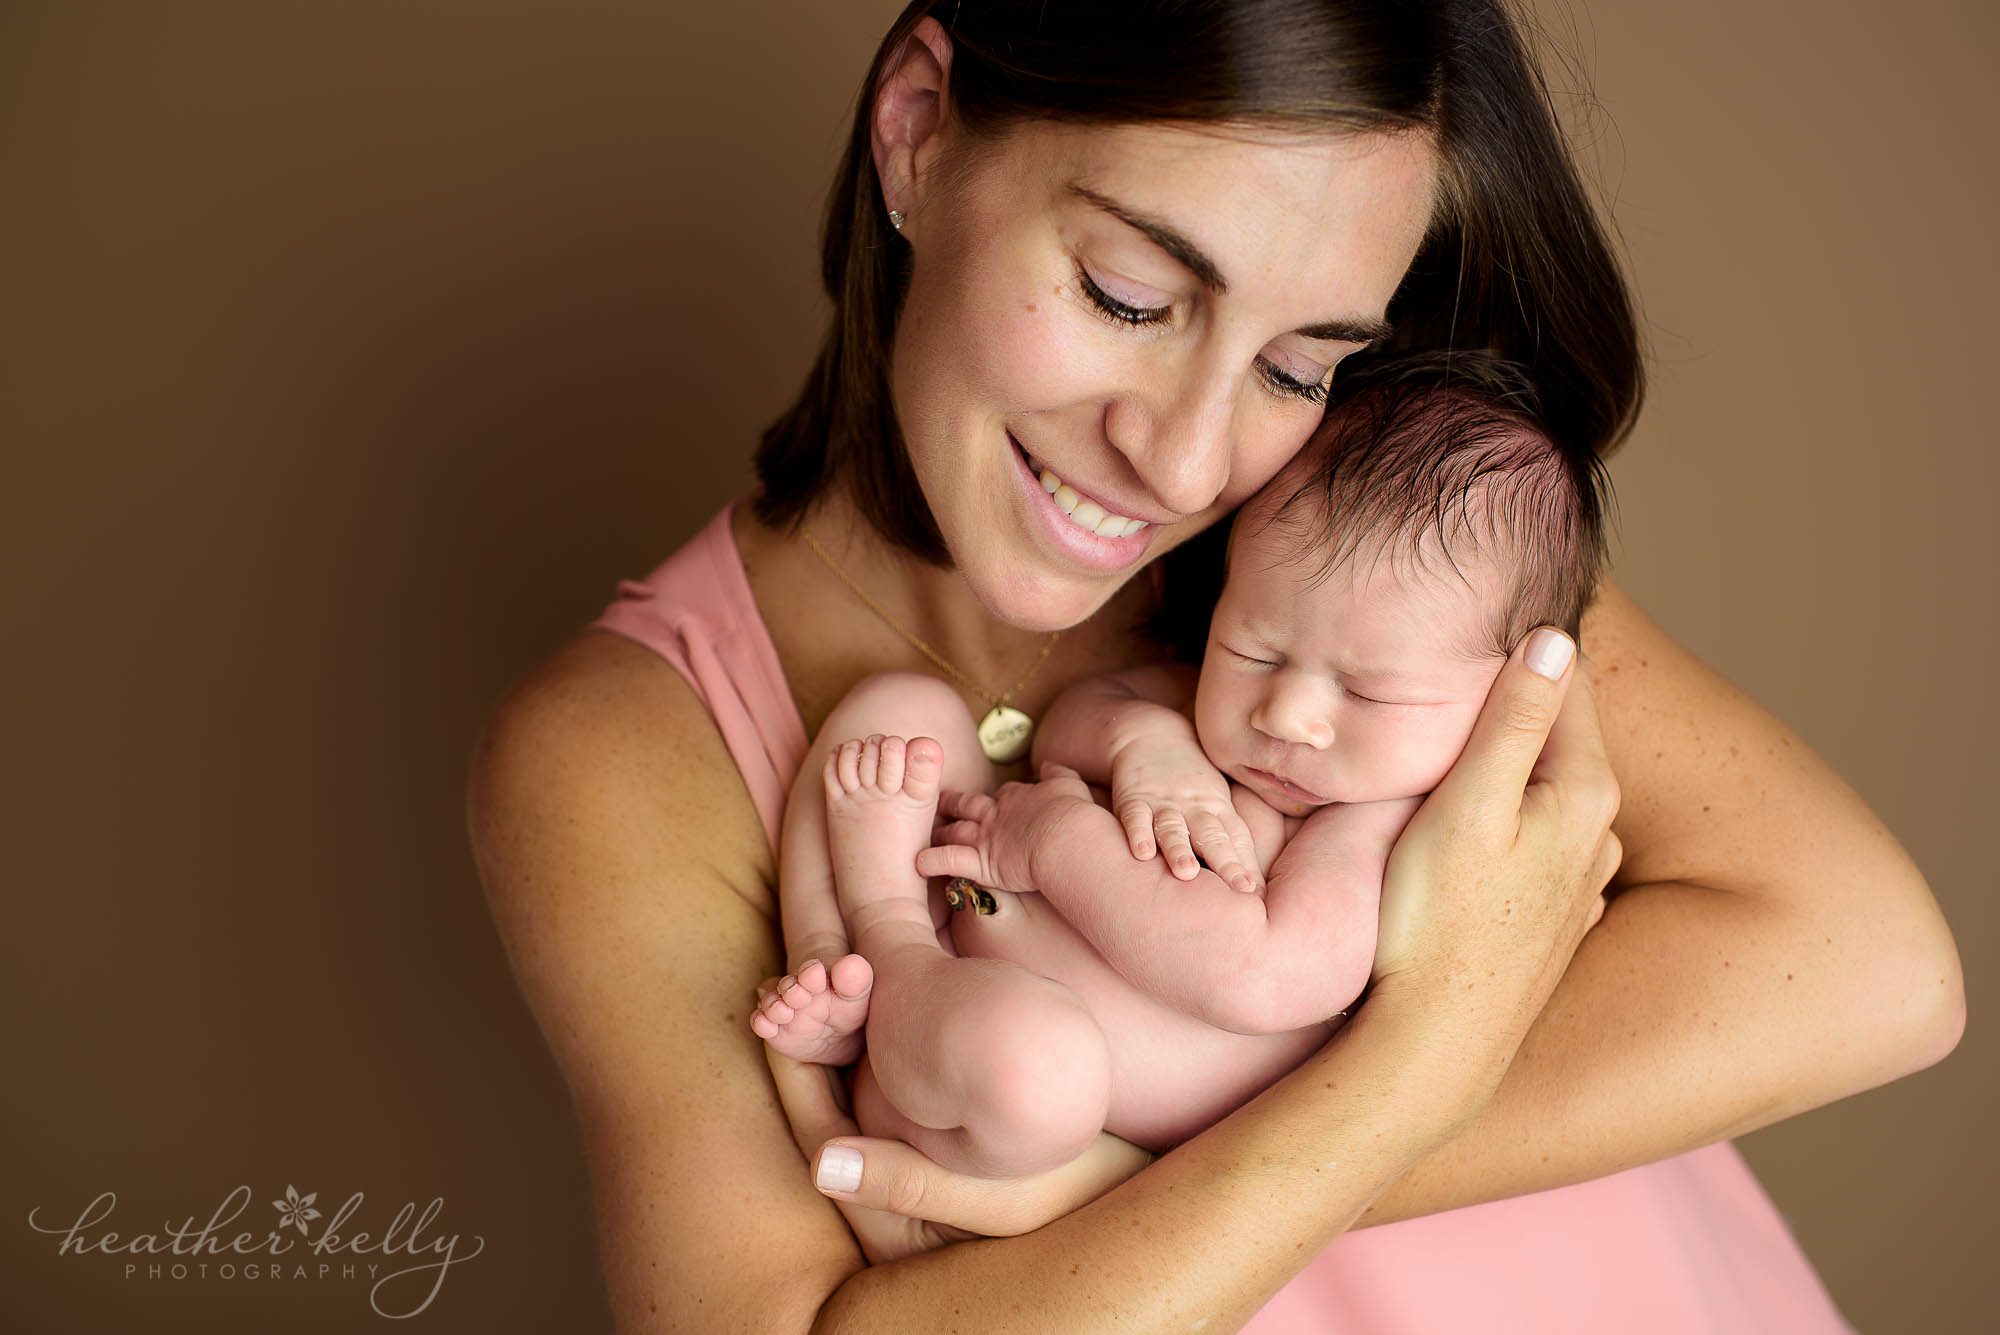 mom and newborn girl photo. newborn love ct photography